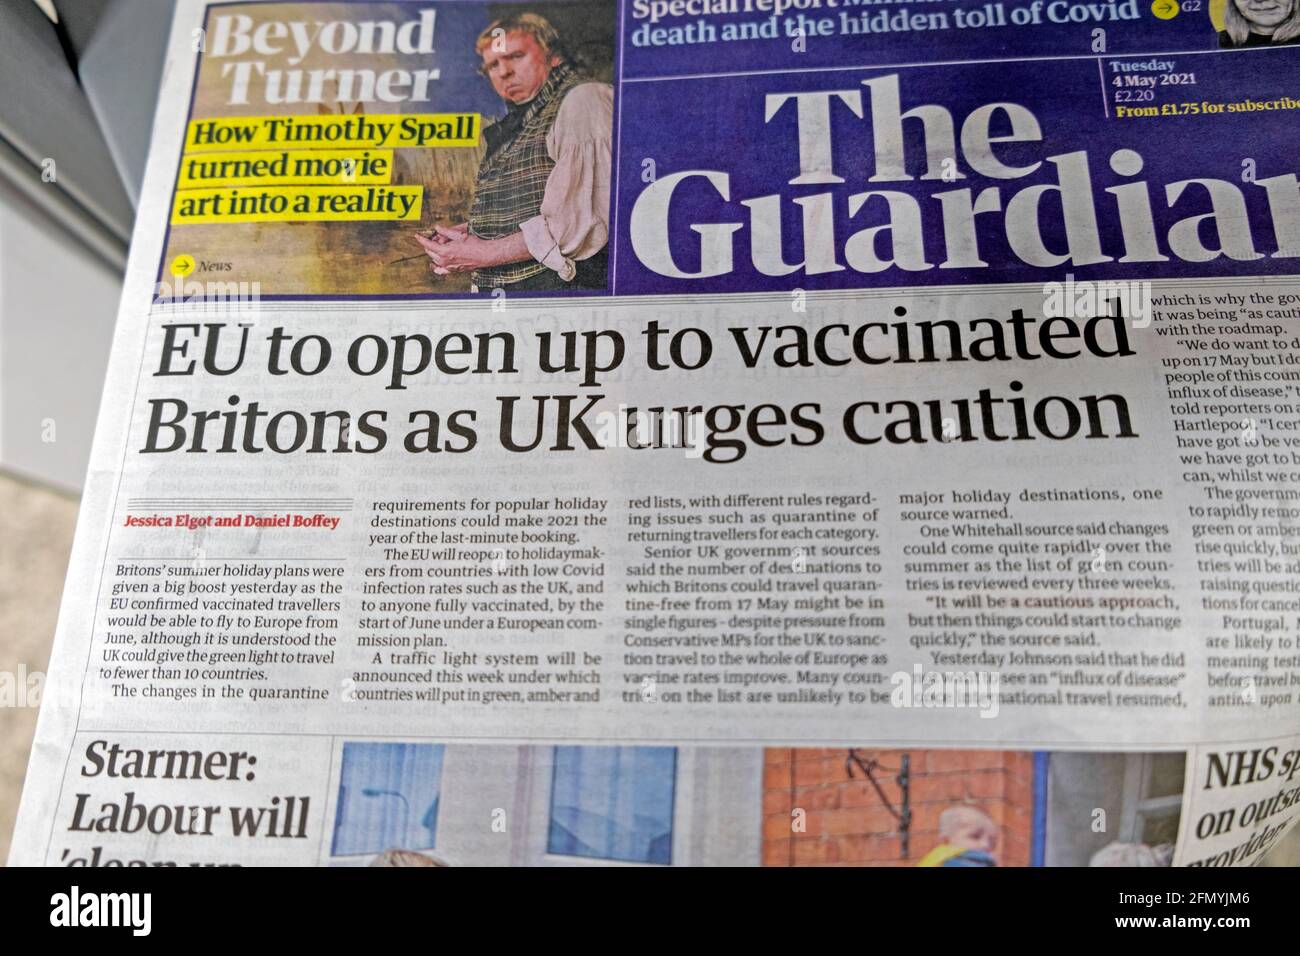 "L'UE deve aprirsi ai britannici vaccinati, come chiede il Regno Unito Attenzione' la prima pagina del titolo del giornale Guardian Covid 19 su 4 maggio 2021 a Londra Inghilterra Regno Unito Foto Stock